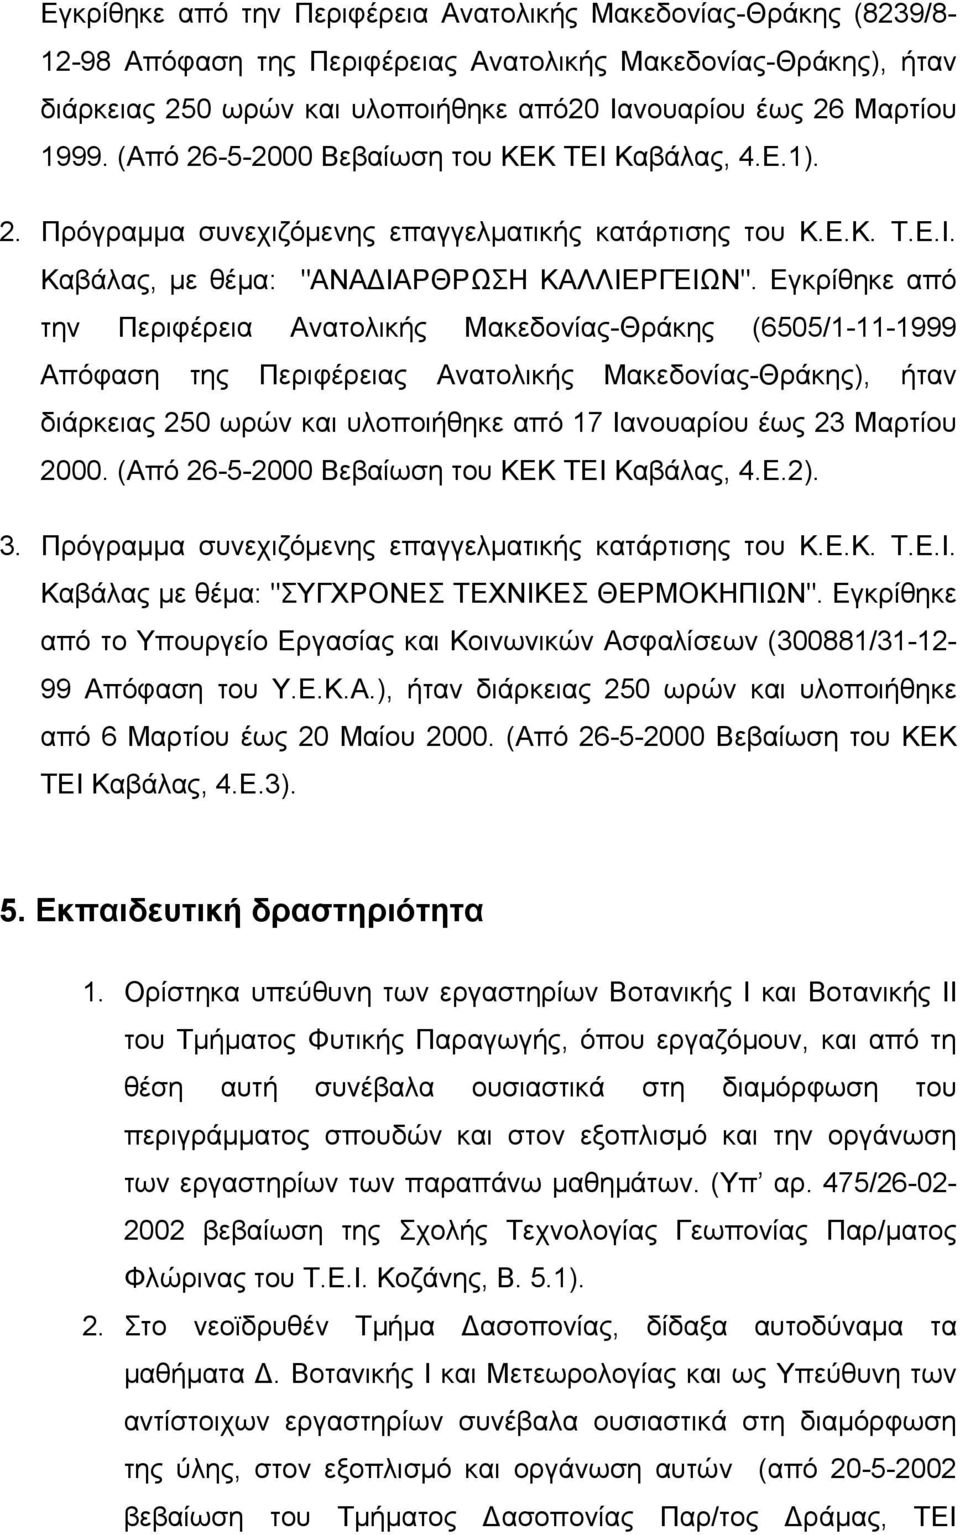 Εγκρίθηκε από την Περιφέρεια Ανατολικής Μακεδονίας-Θράκης (6505/1-11-1999 Απόφαση της Περιφέρειας Ανατολικής Μακεδονίας-Θράκης), ήταν διάρκειας 250 ωρών και υλοποιήθηκε από 17 Ιανουαρίου έως 23